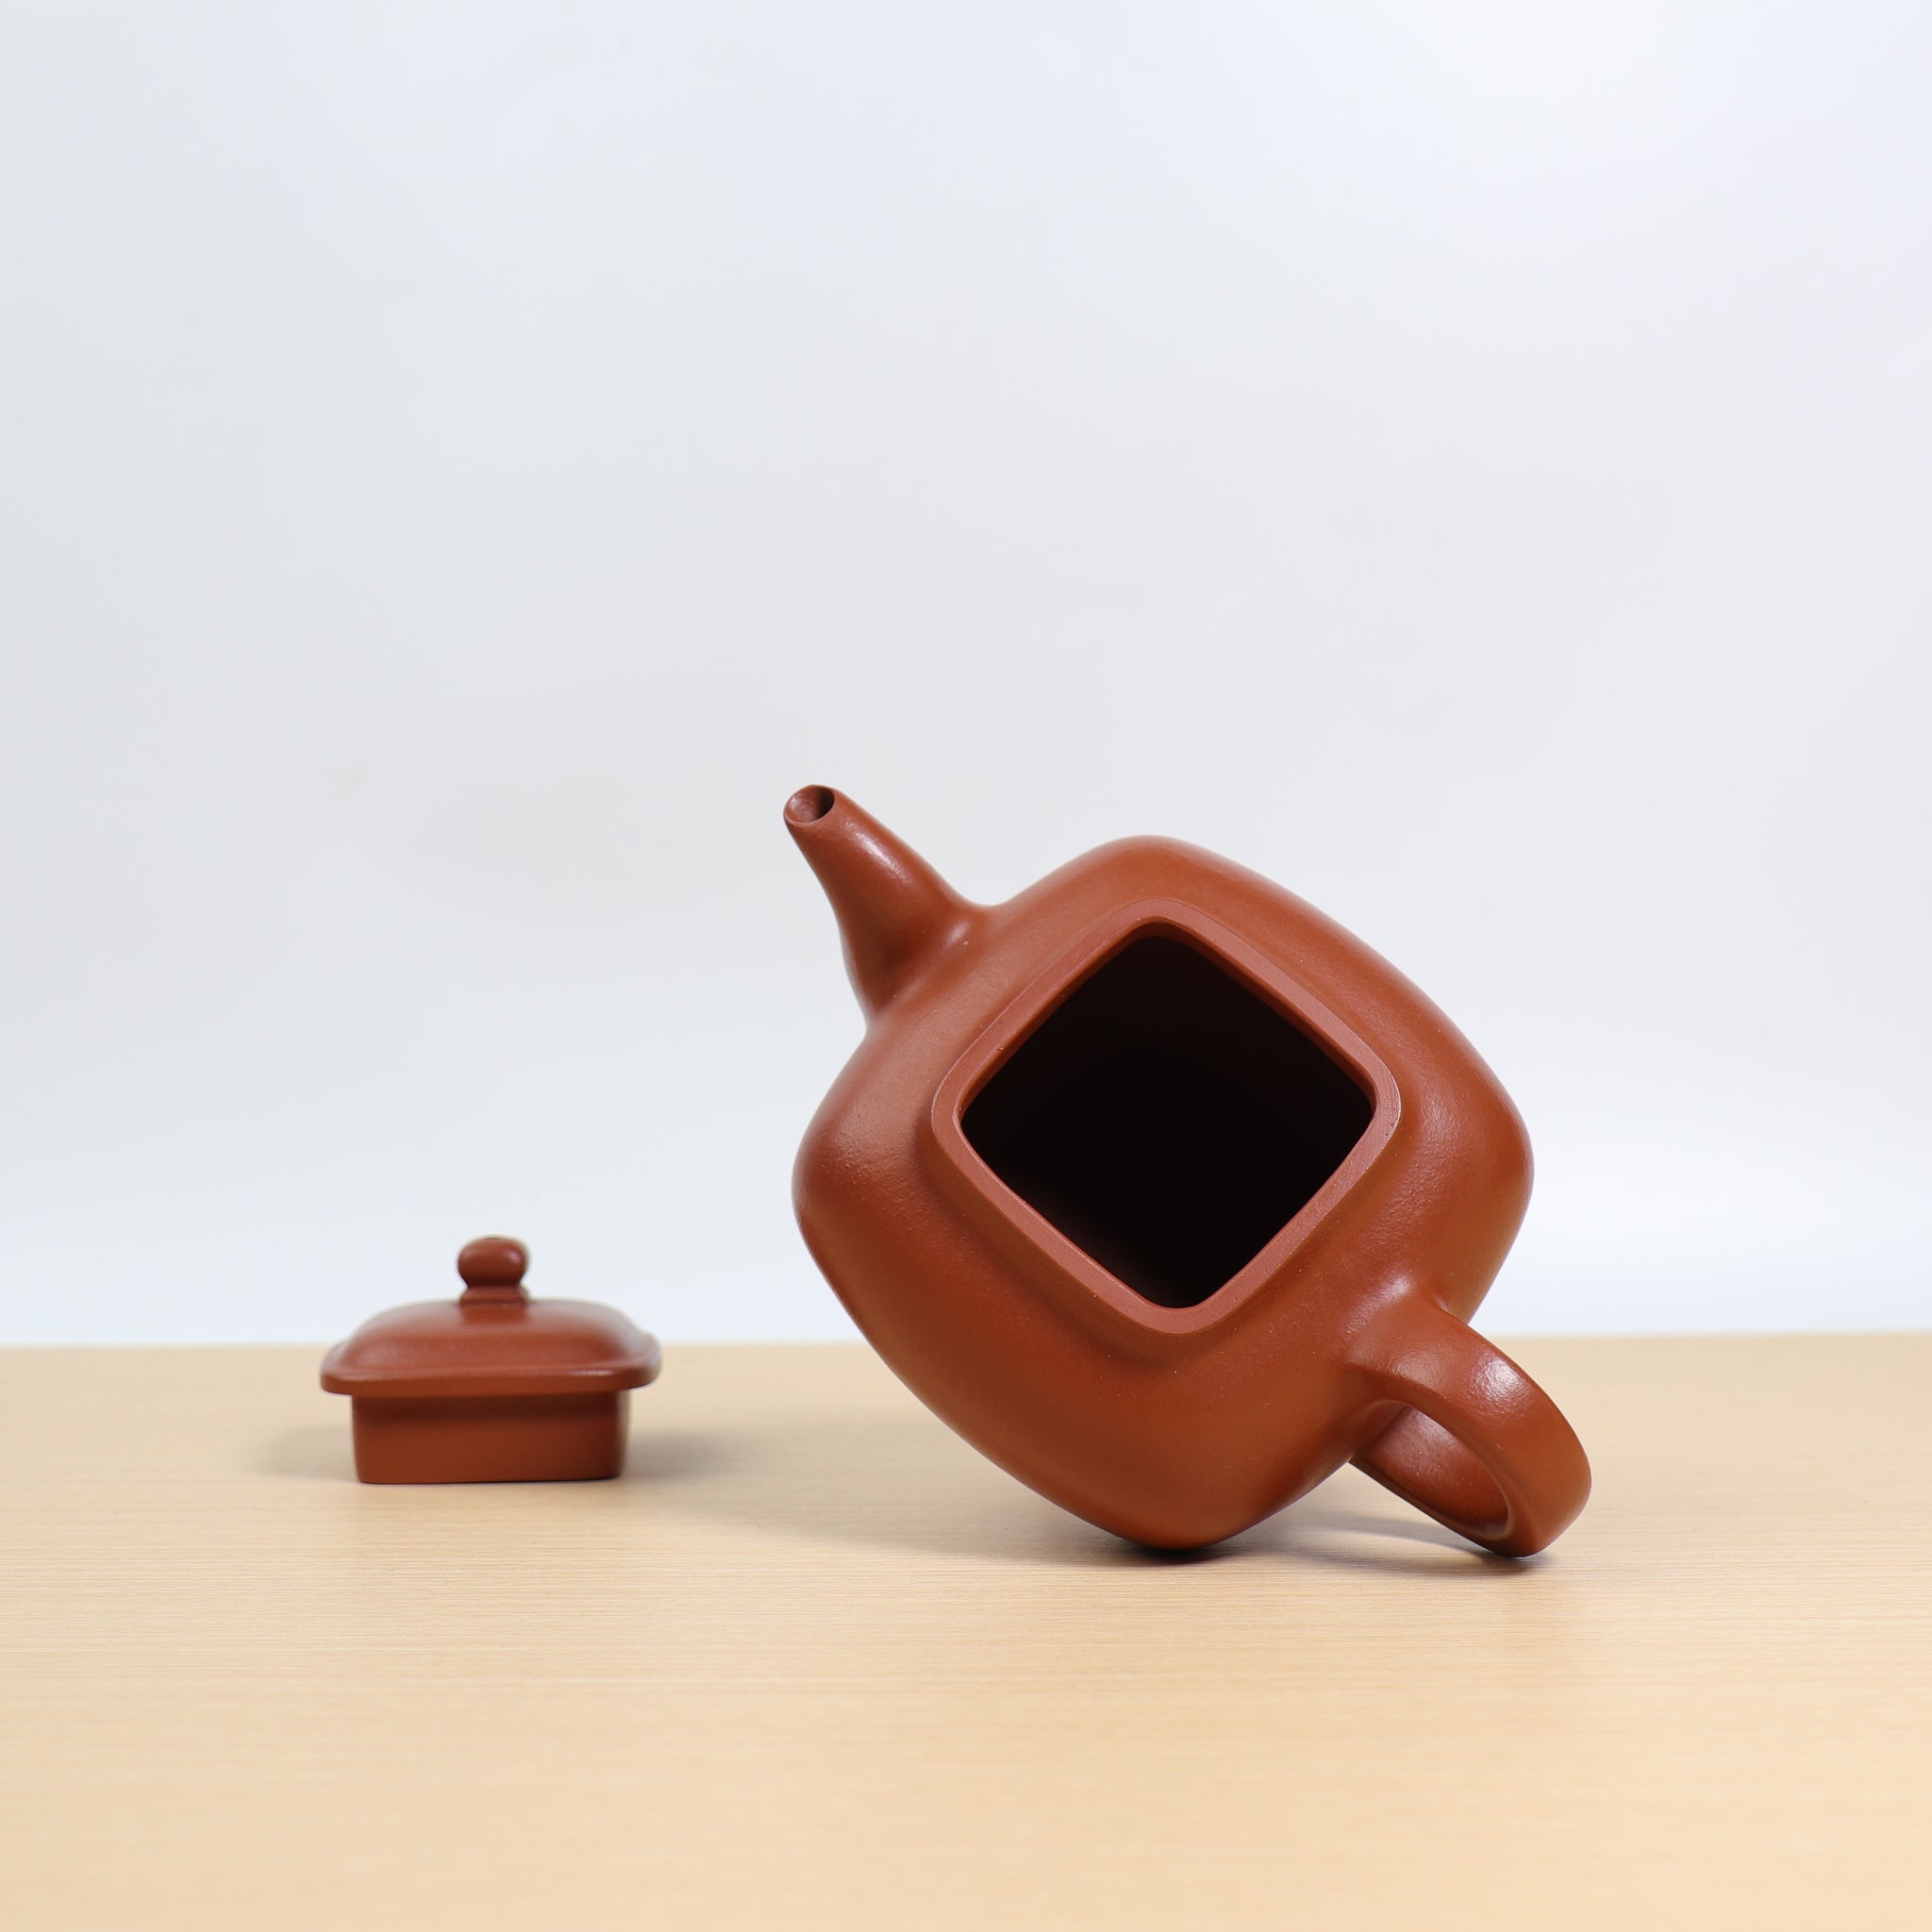 （已售出）【傳爐】原礦朱泥紫砂茶壺